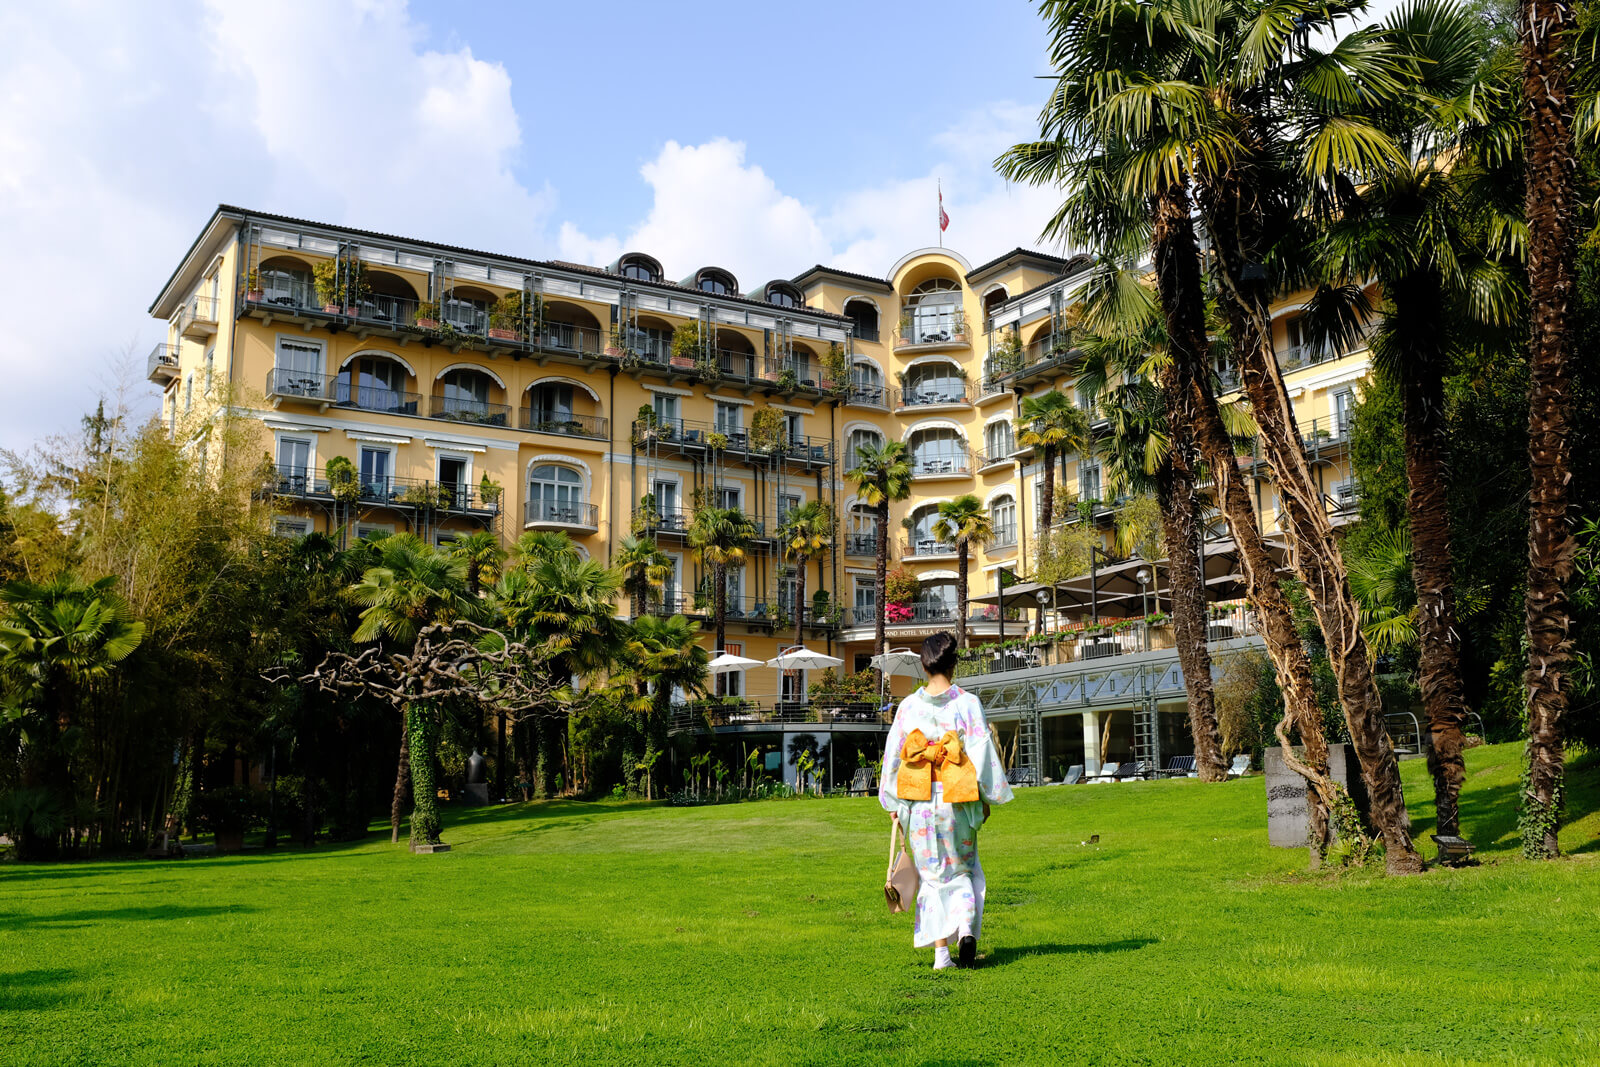 Grand Hotel Villa Castagnola in Lugano, Switzerland